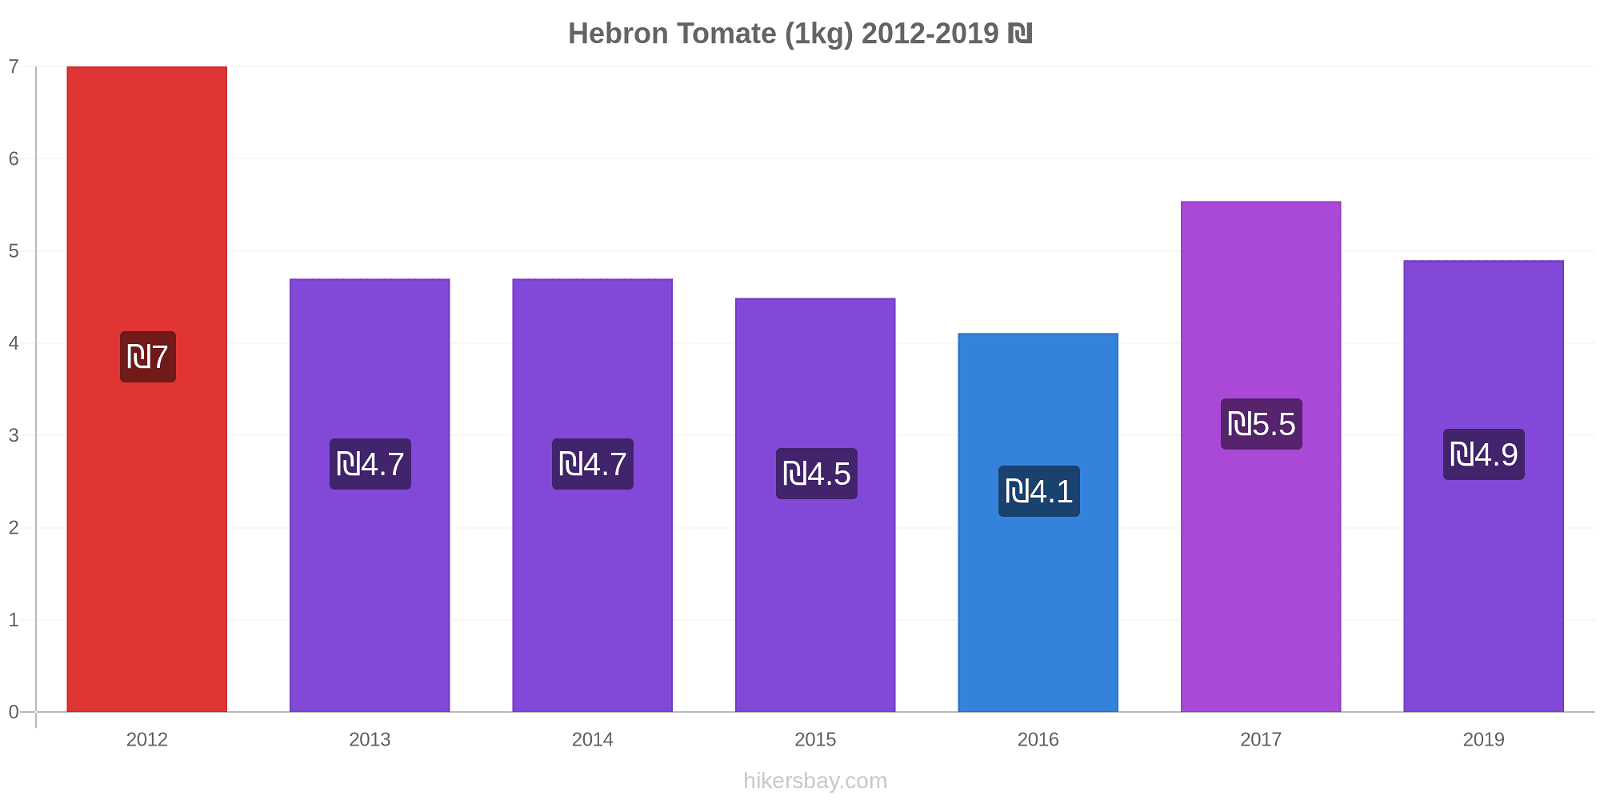 Hebron modificări de preț Tomate (1kg) hikersbay.com